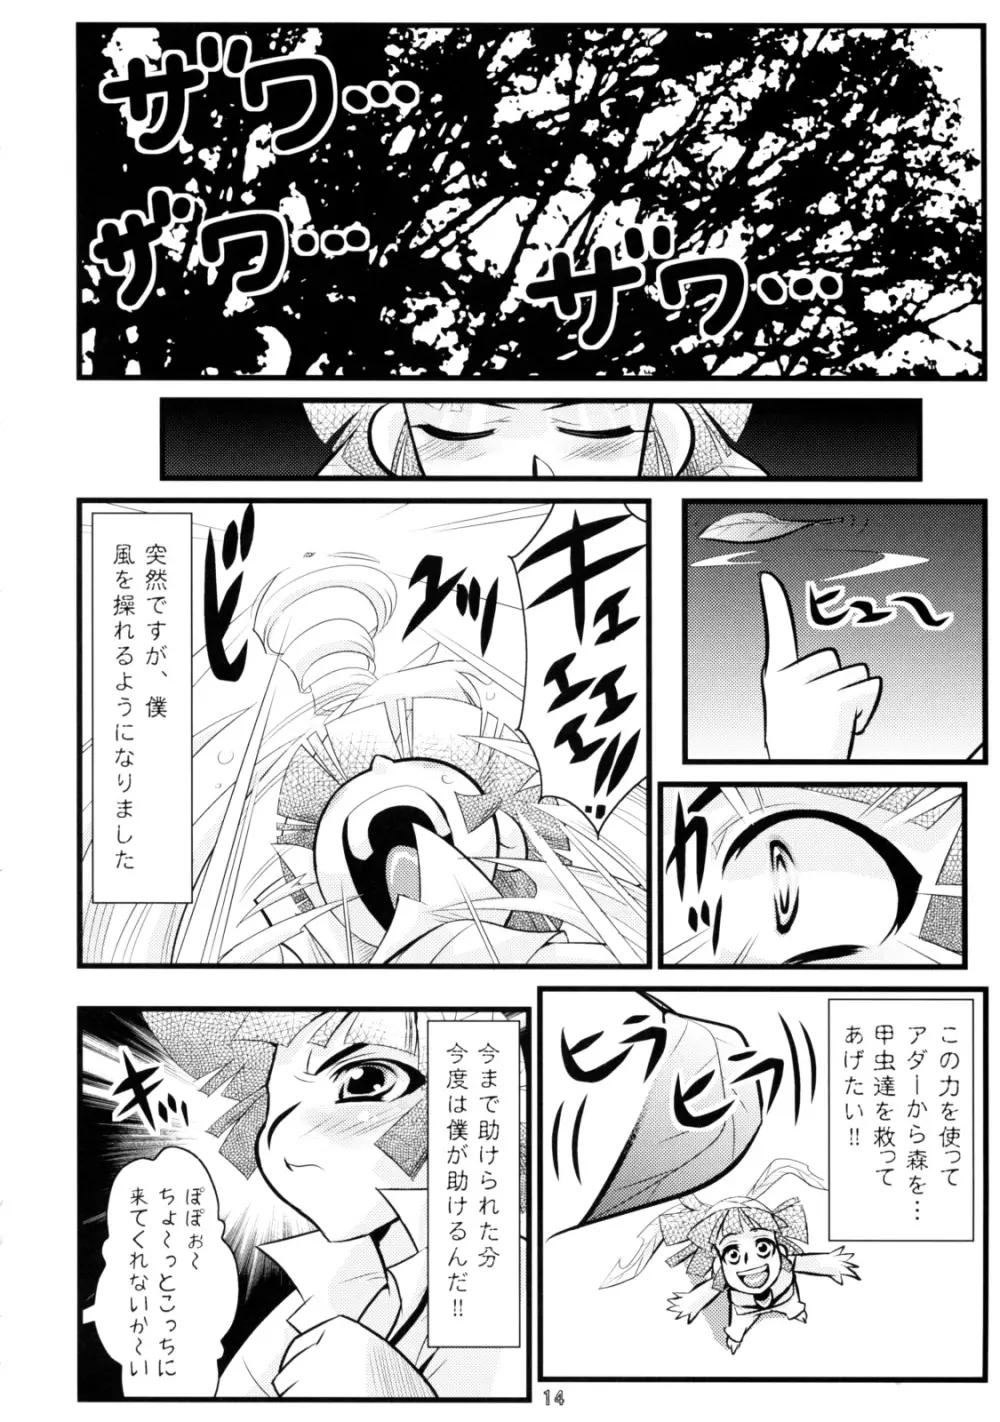 Calmboydotcom Kodomo wa Kaze no Ko Genki na Ko 13ページ